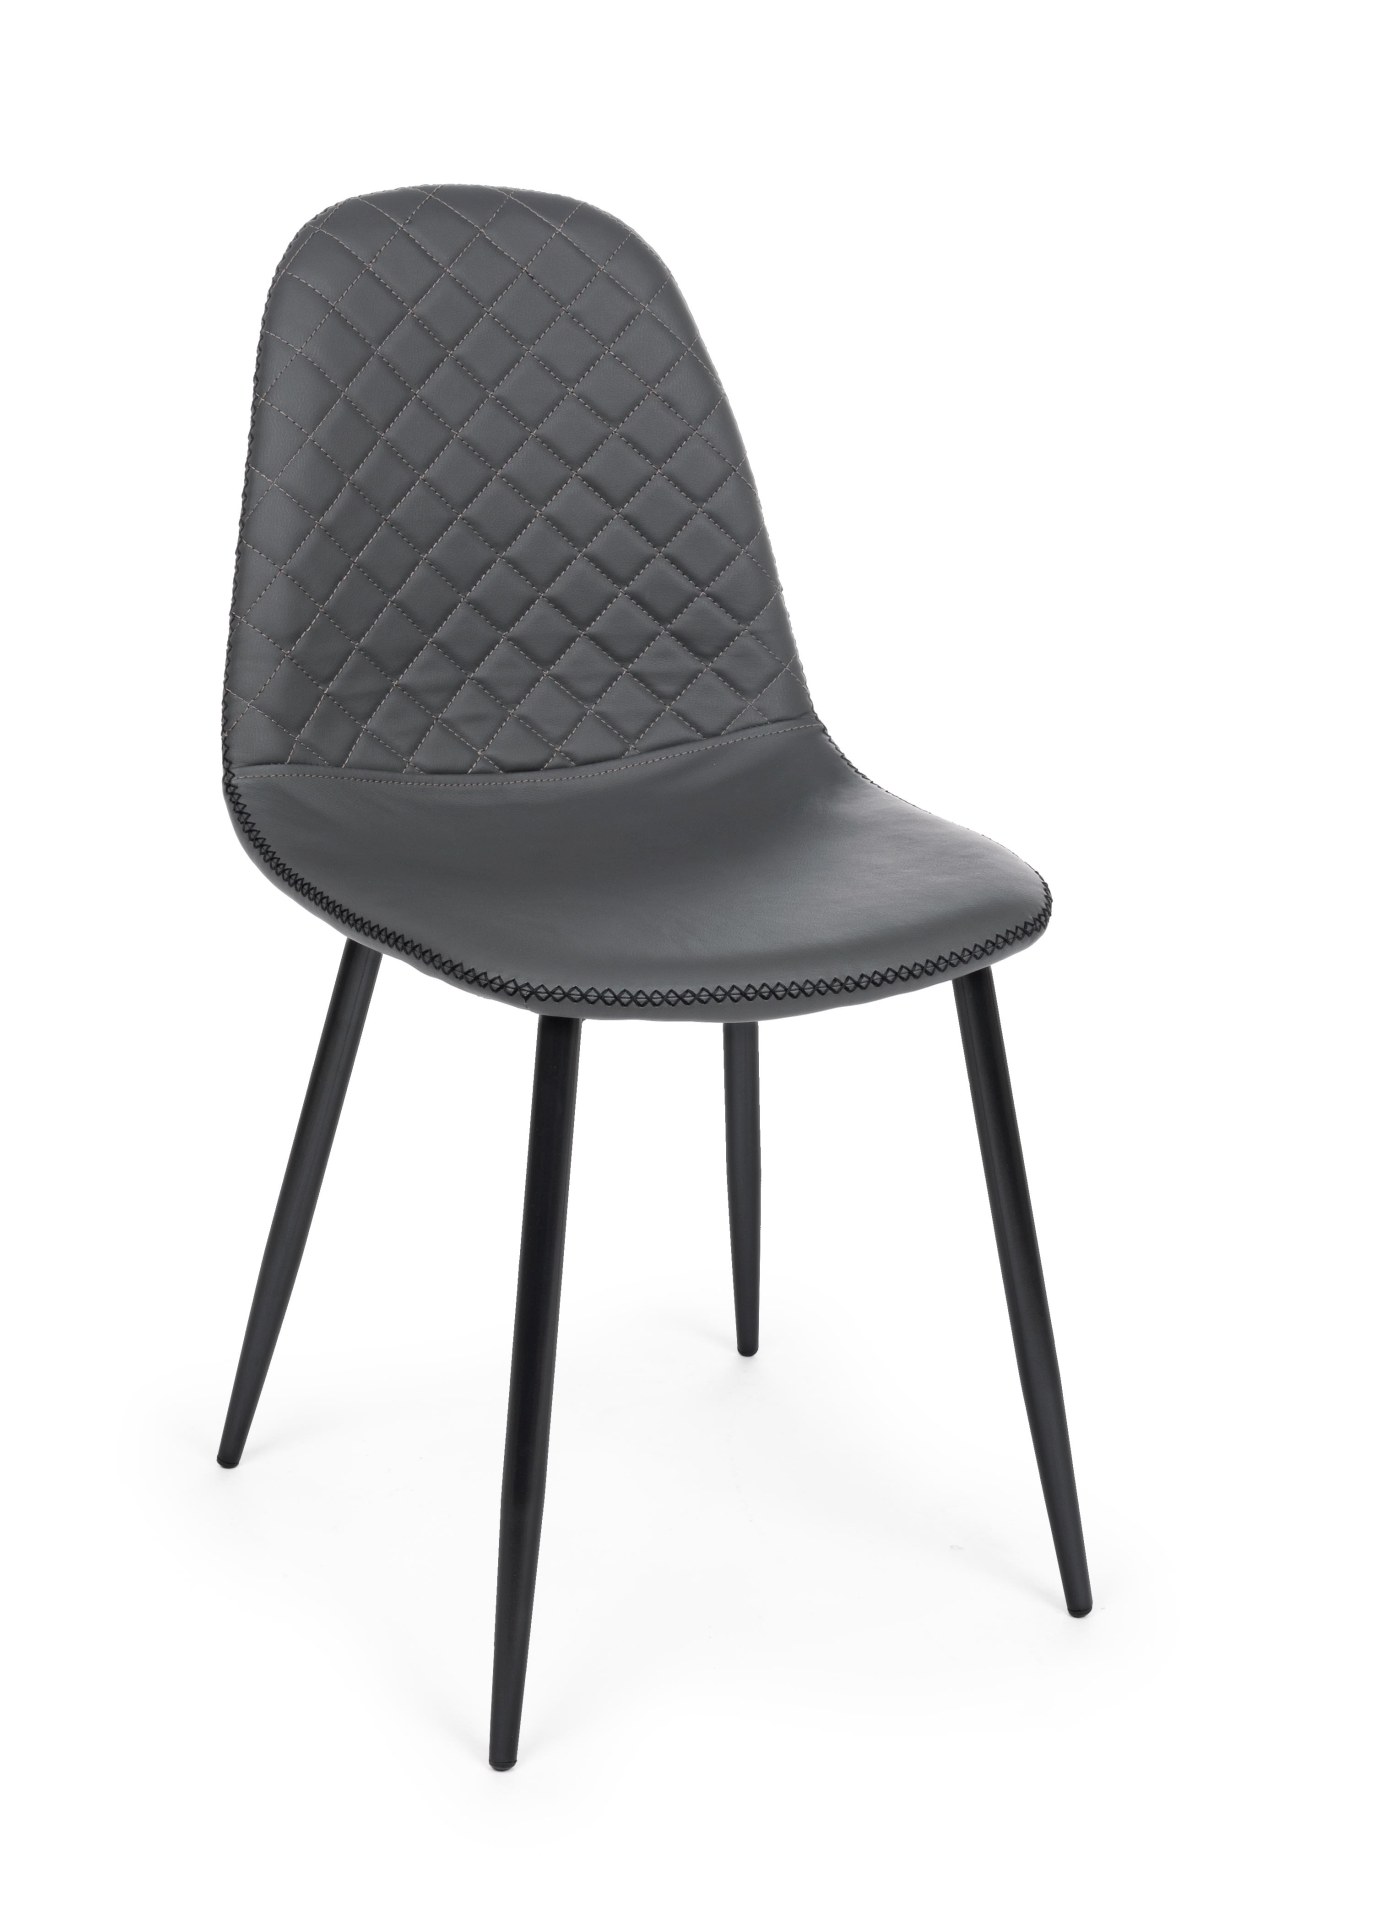 Der Esszimmerstuhl Amanda überzeugt mit seinem modernem Design. Gefertigt wurde der Stuhl aus Kunstleder, welches einen grauen Farbton besitzt. Das Gestell ist aus Metall und ist Schwarz. Die Sitzhöhe beträgt 49 cm.